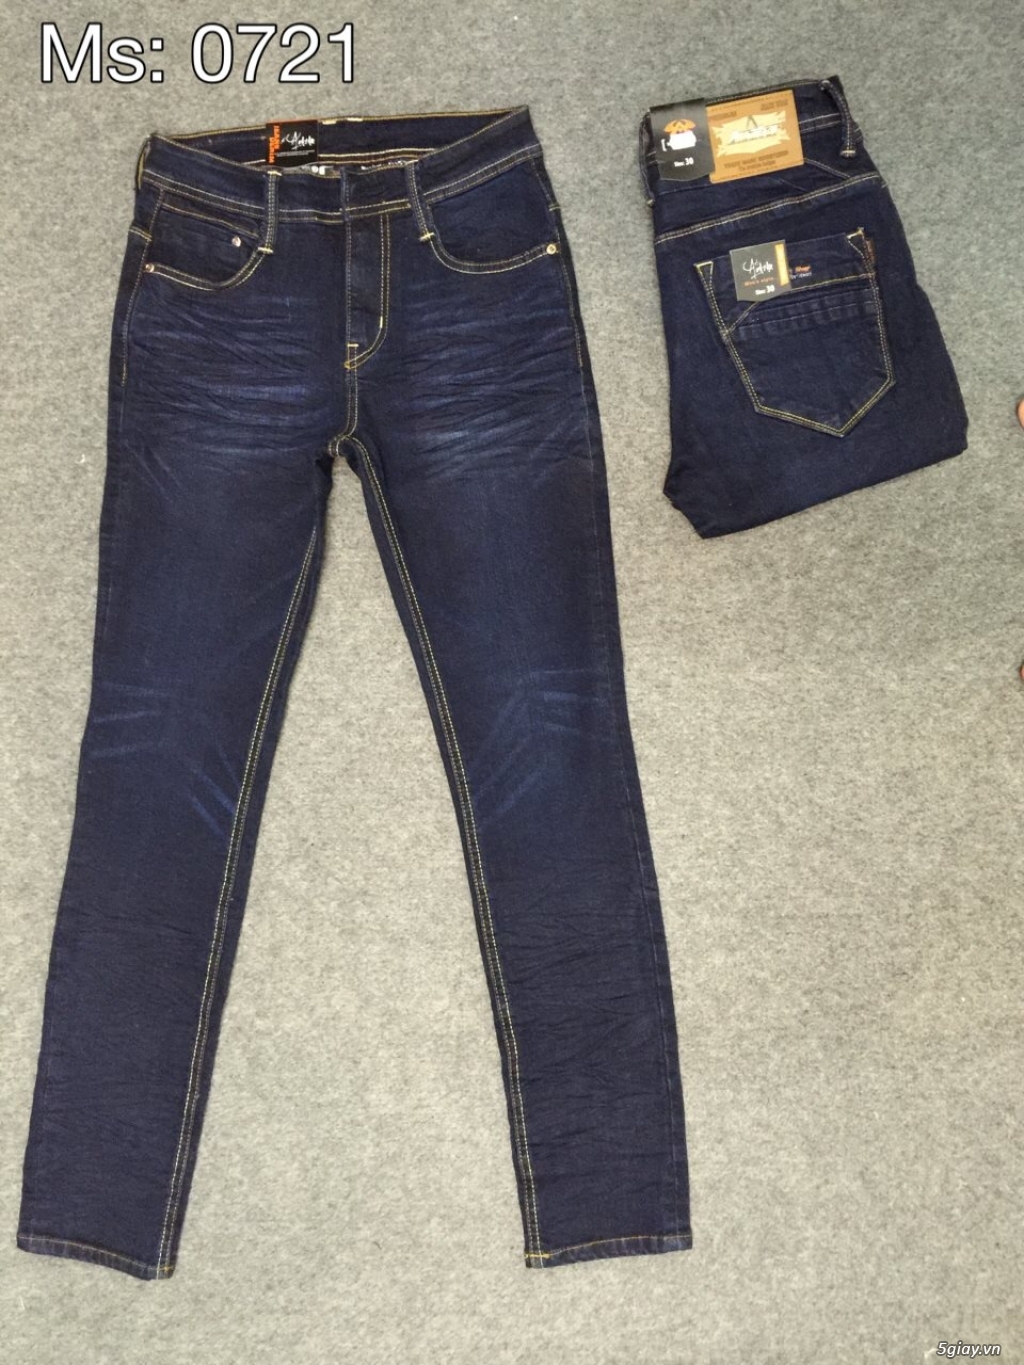 BG STORE - Xưởng Sỉ & Lẻ Quần áo jeans Nam Nữ cao cấp giá rẻ - 7